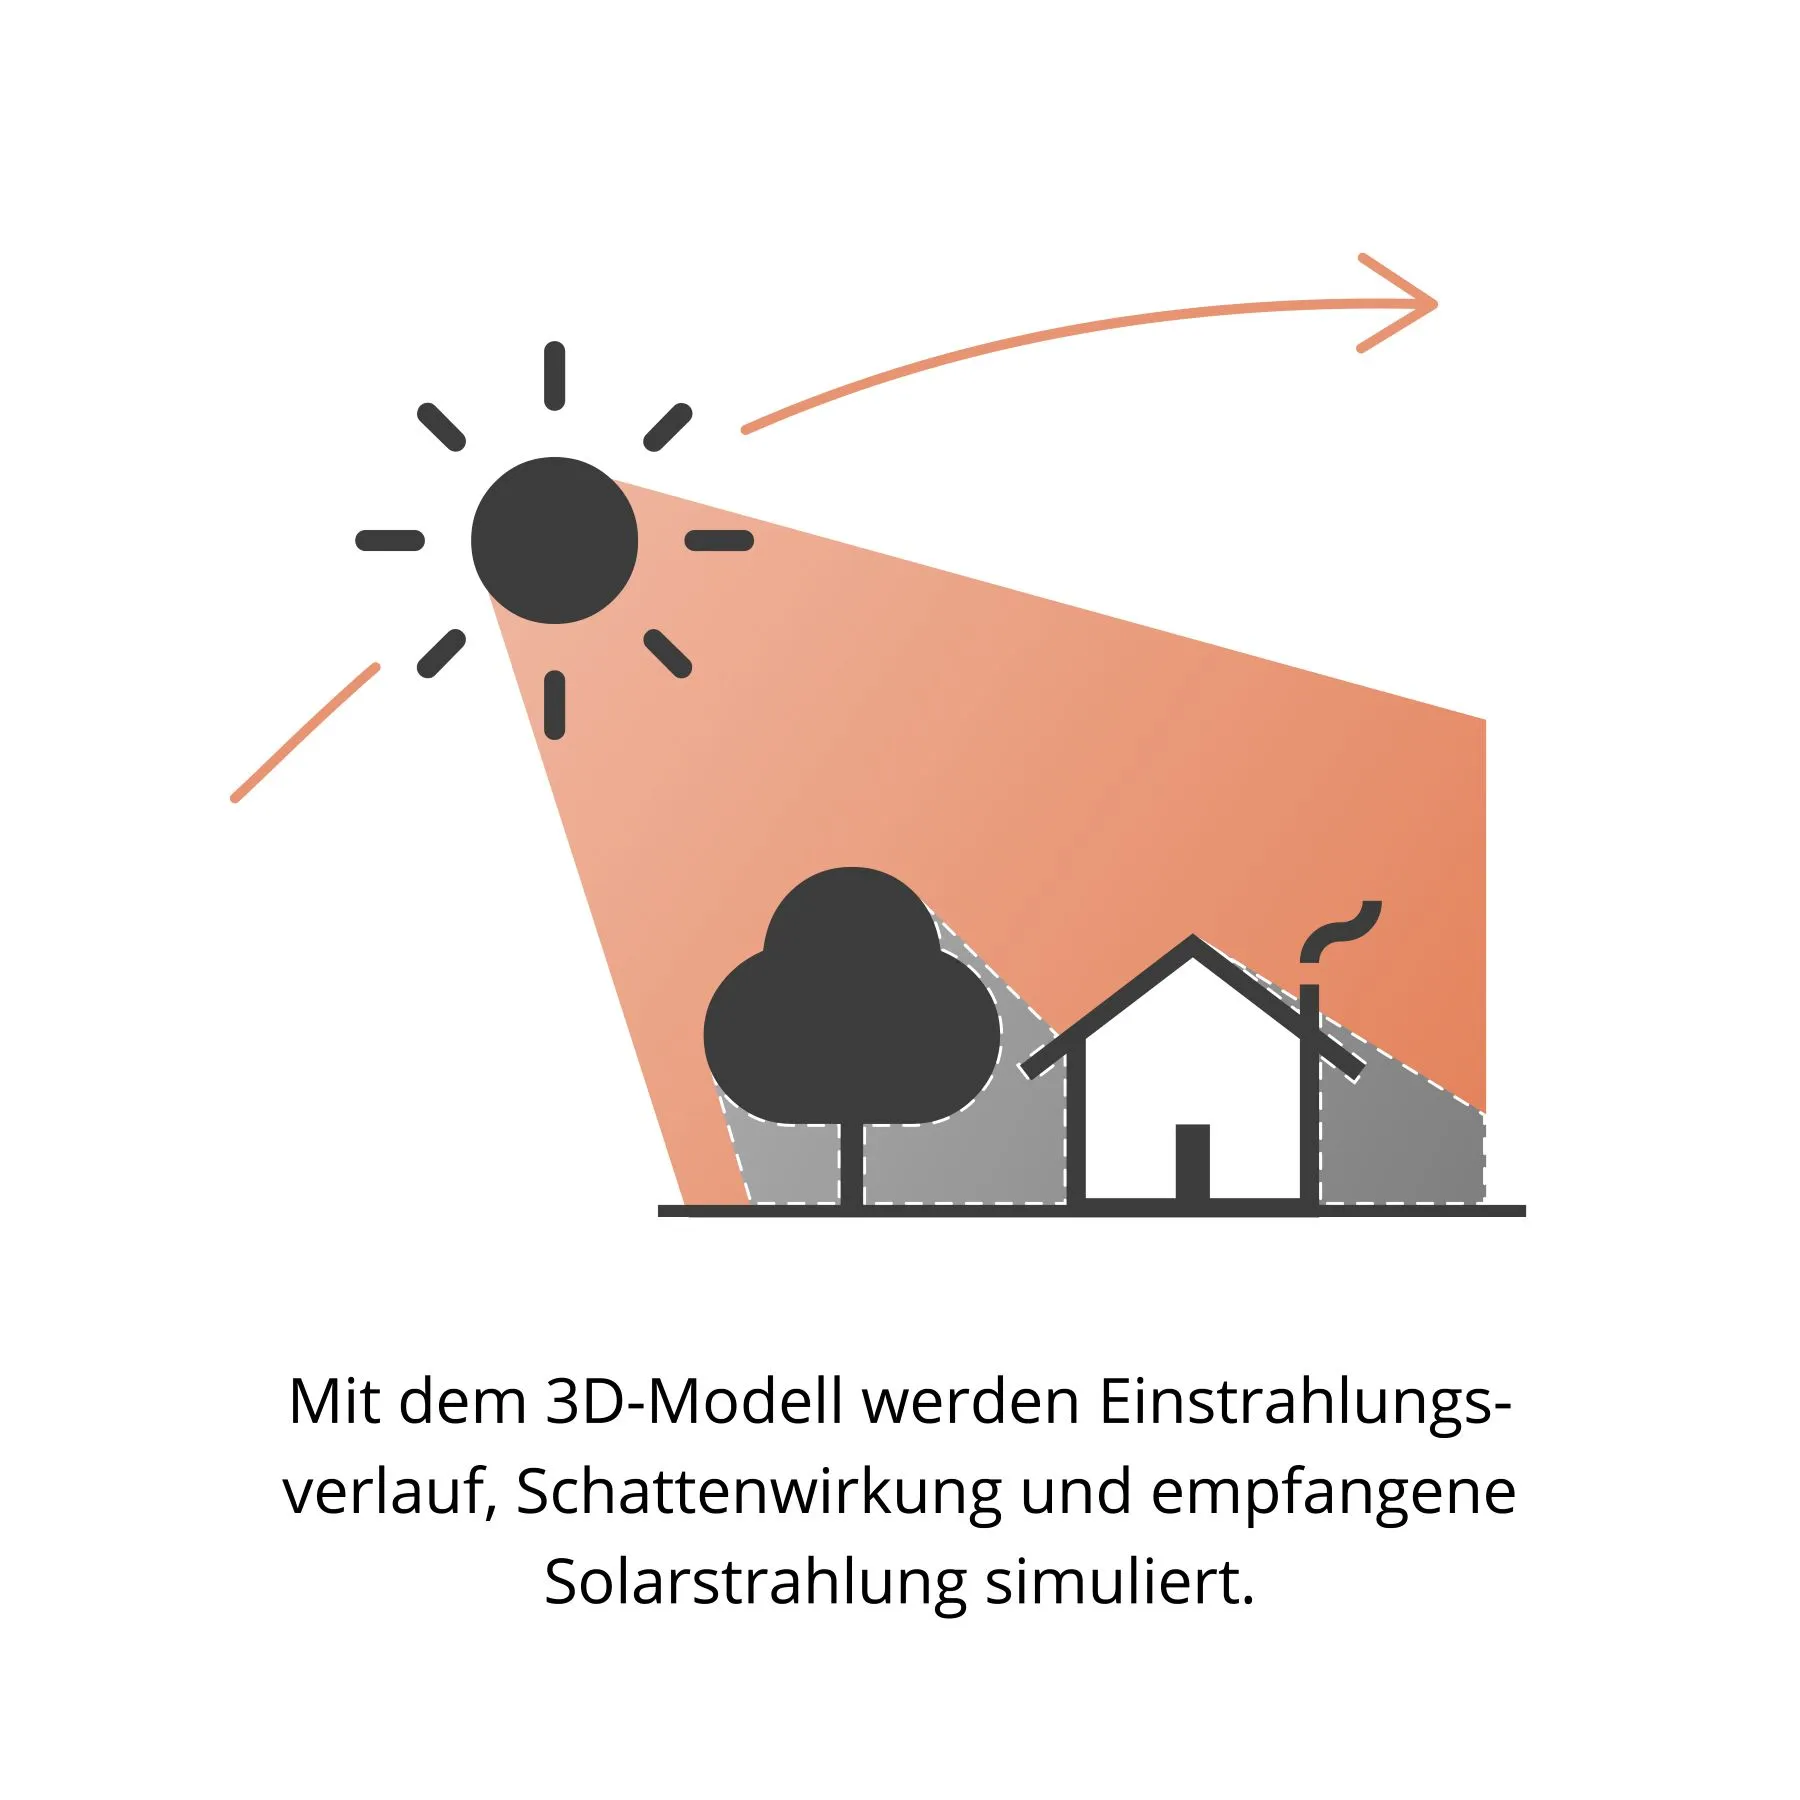 Erklärung des Solarpotenzialkatasters